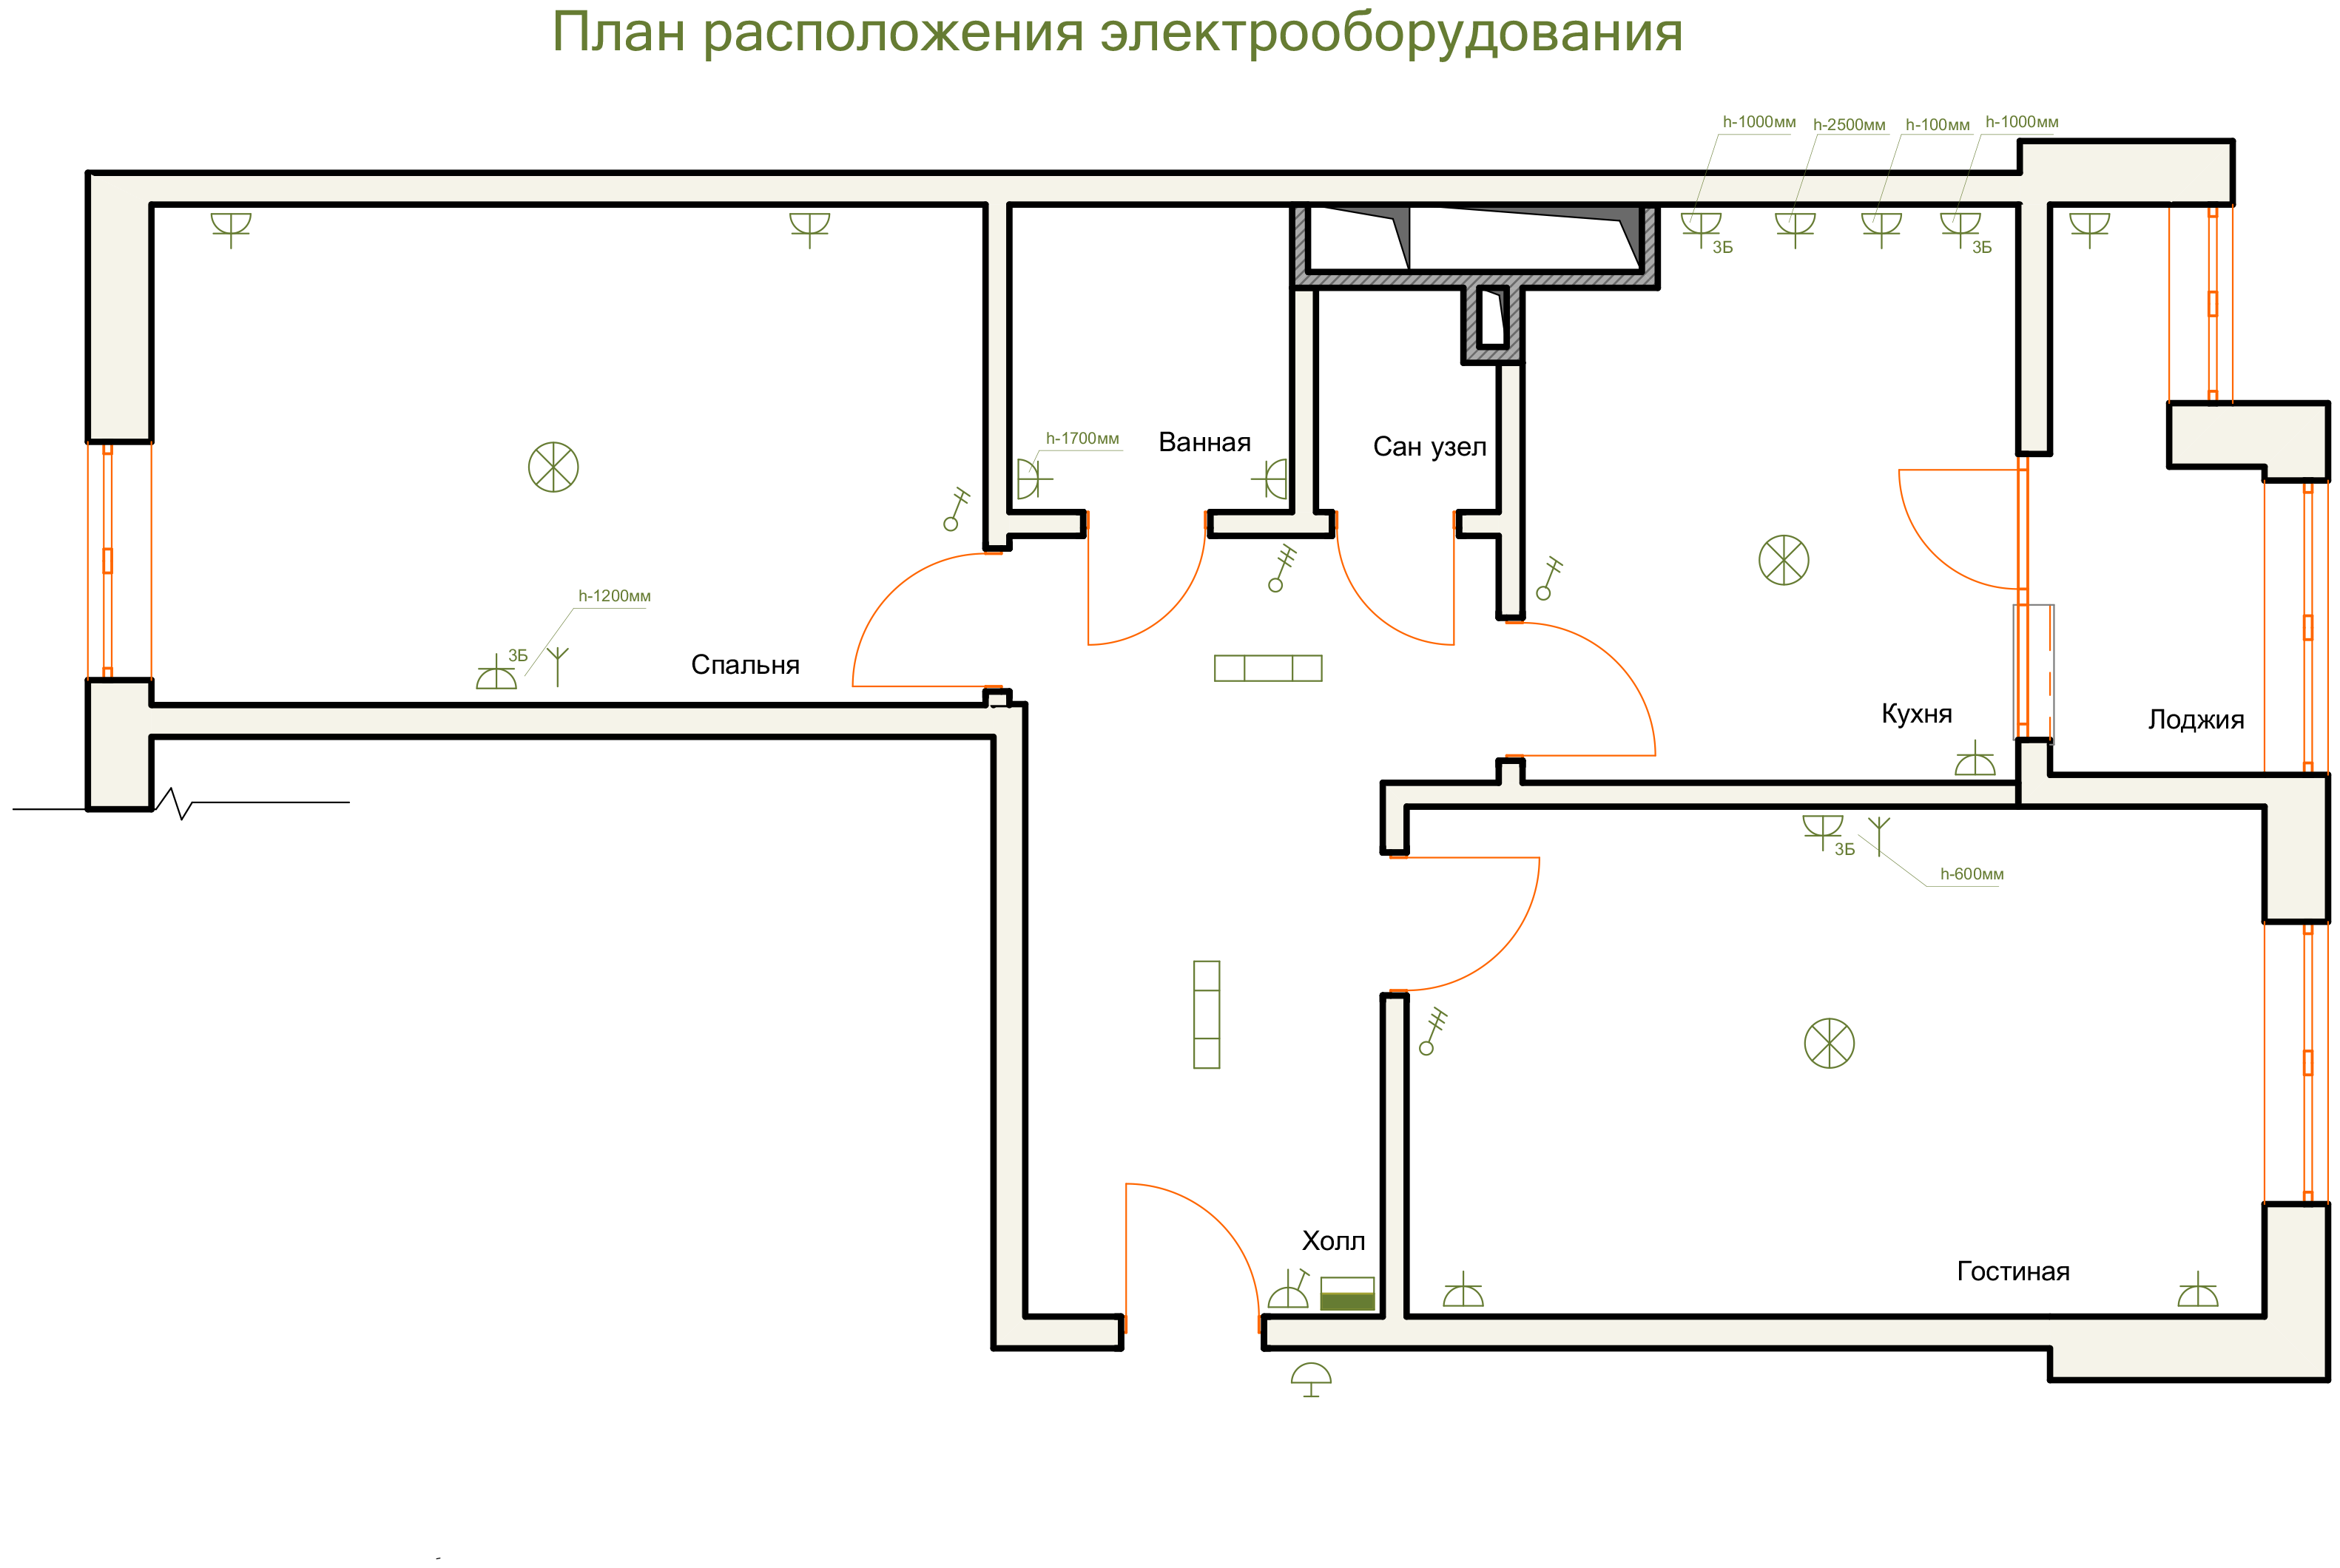 Схема электропроводки в квартире (спальная комната)